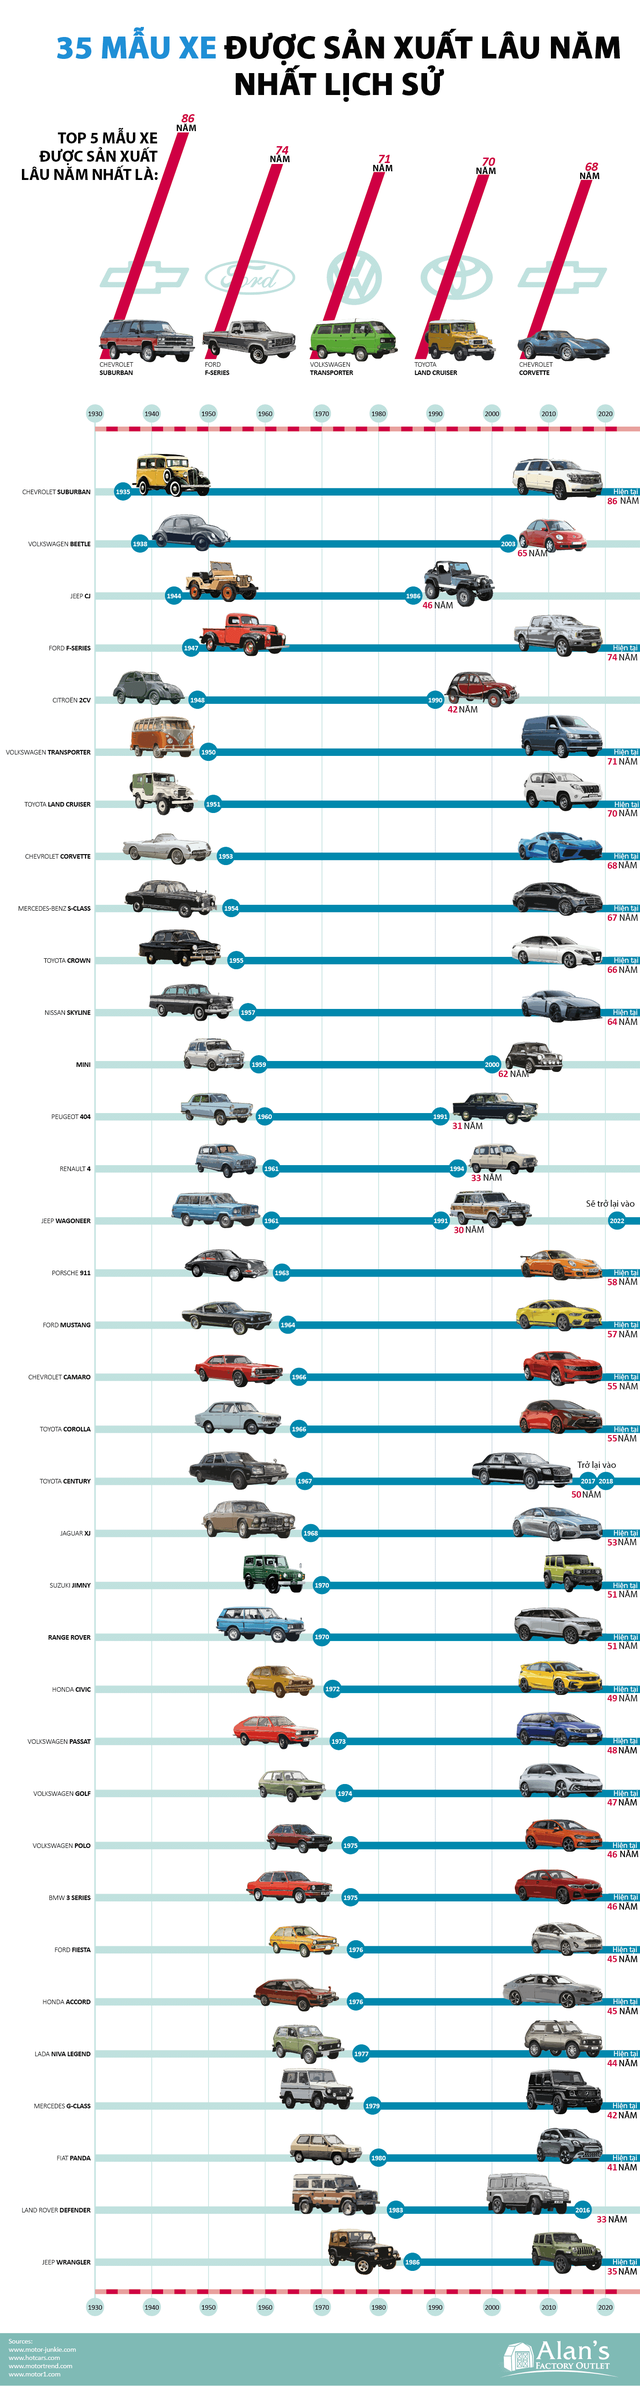 35 mẫu xe có tuổi thọ cao nhất lịch sử, Chevrolet Suburban và Ford F-Series dẫn đầu - Ảnh 1.